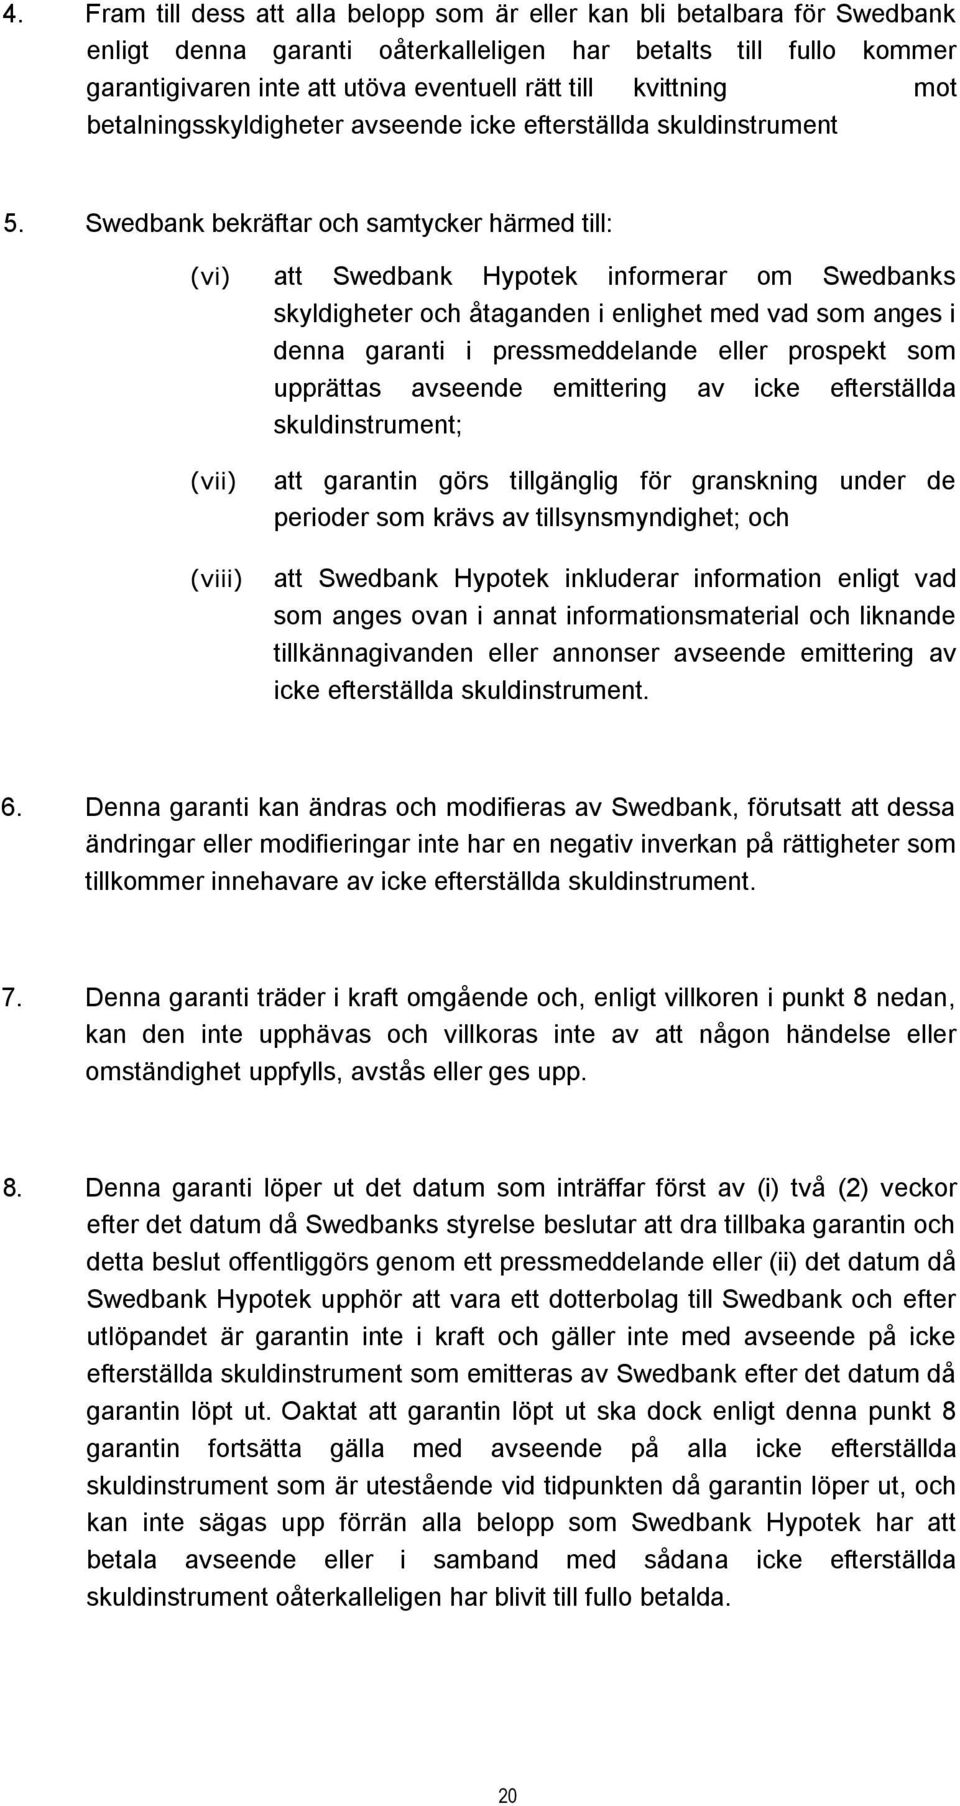 Swedbank bekräftar och samtycker härmed till: (vi) att Swedbank Hypotek informerar om Swedbanks skyldigheter och åtaganden i enlighet med vad som anges i denna garanti i pressmeddelande eller